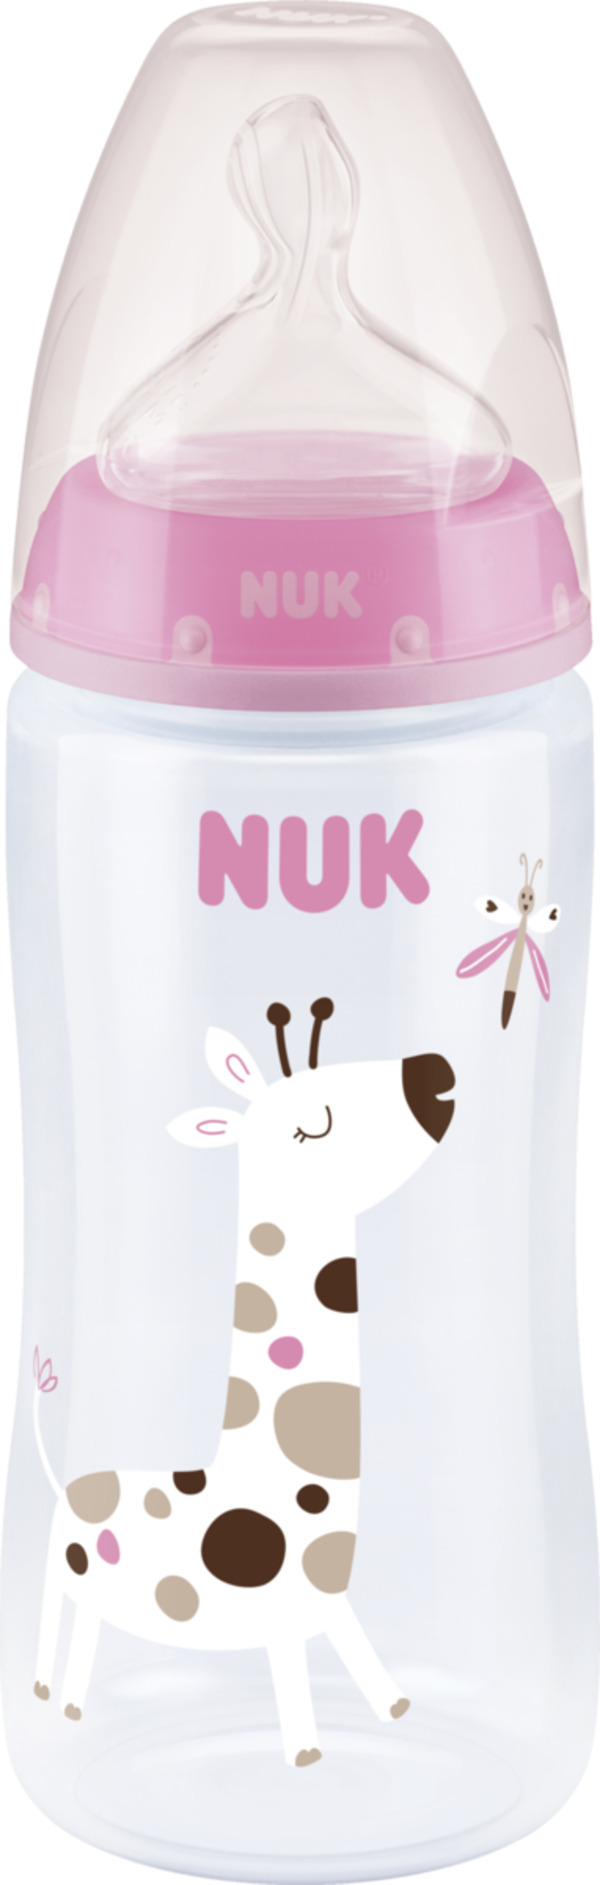 Bild 1 von NUK First Choice+ Babyflasche mit Temperature Control, 6-18 Monate, rosa